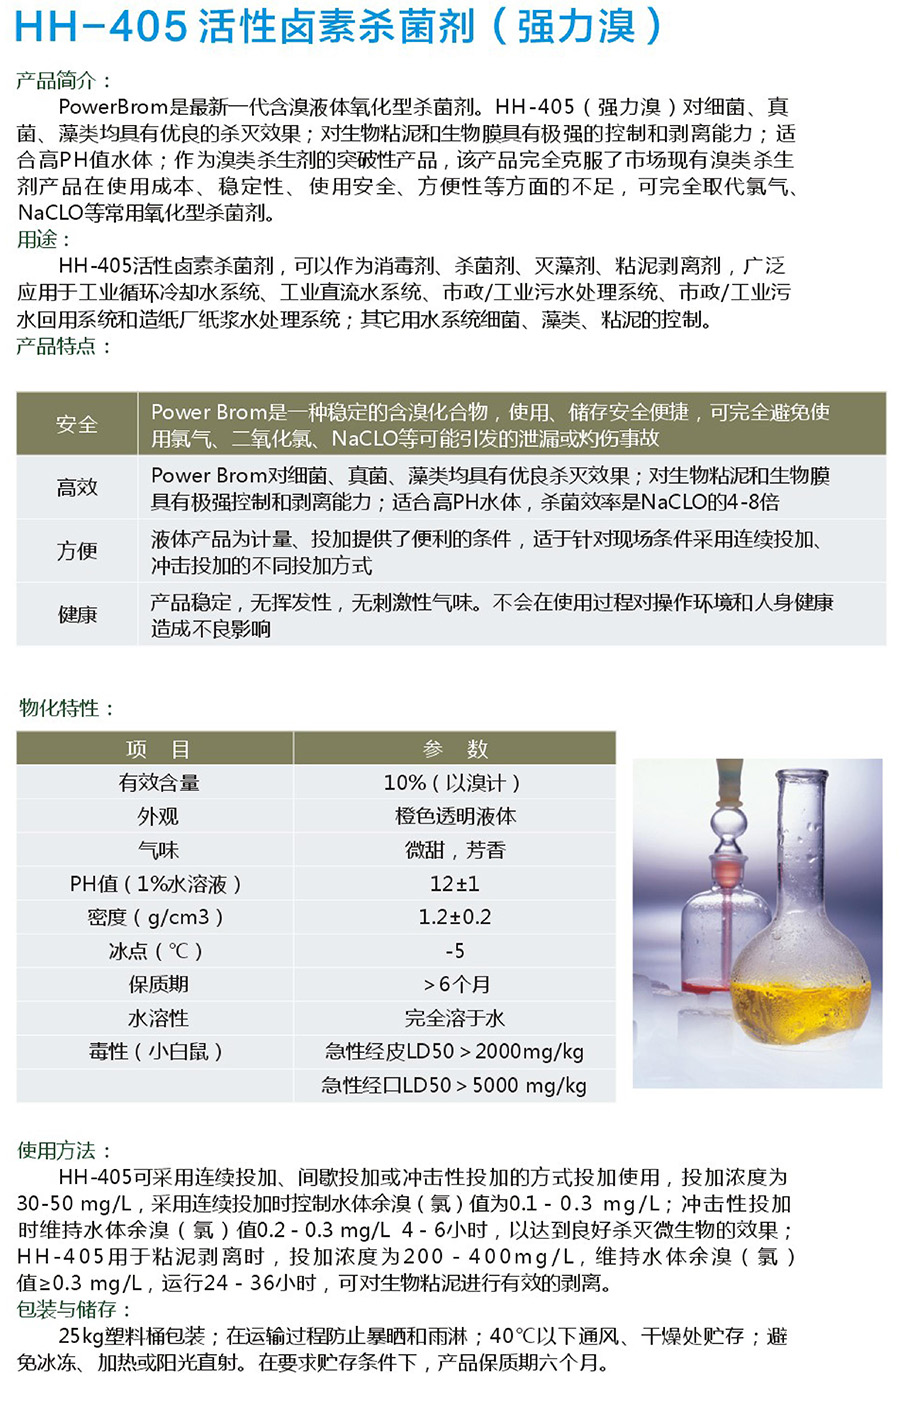 HH-405 活性卤素杀菌剂（强力溴）